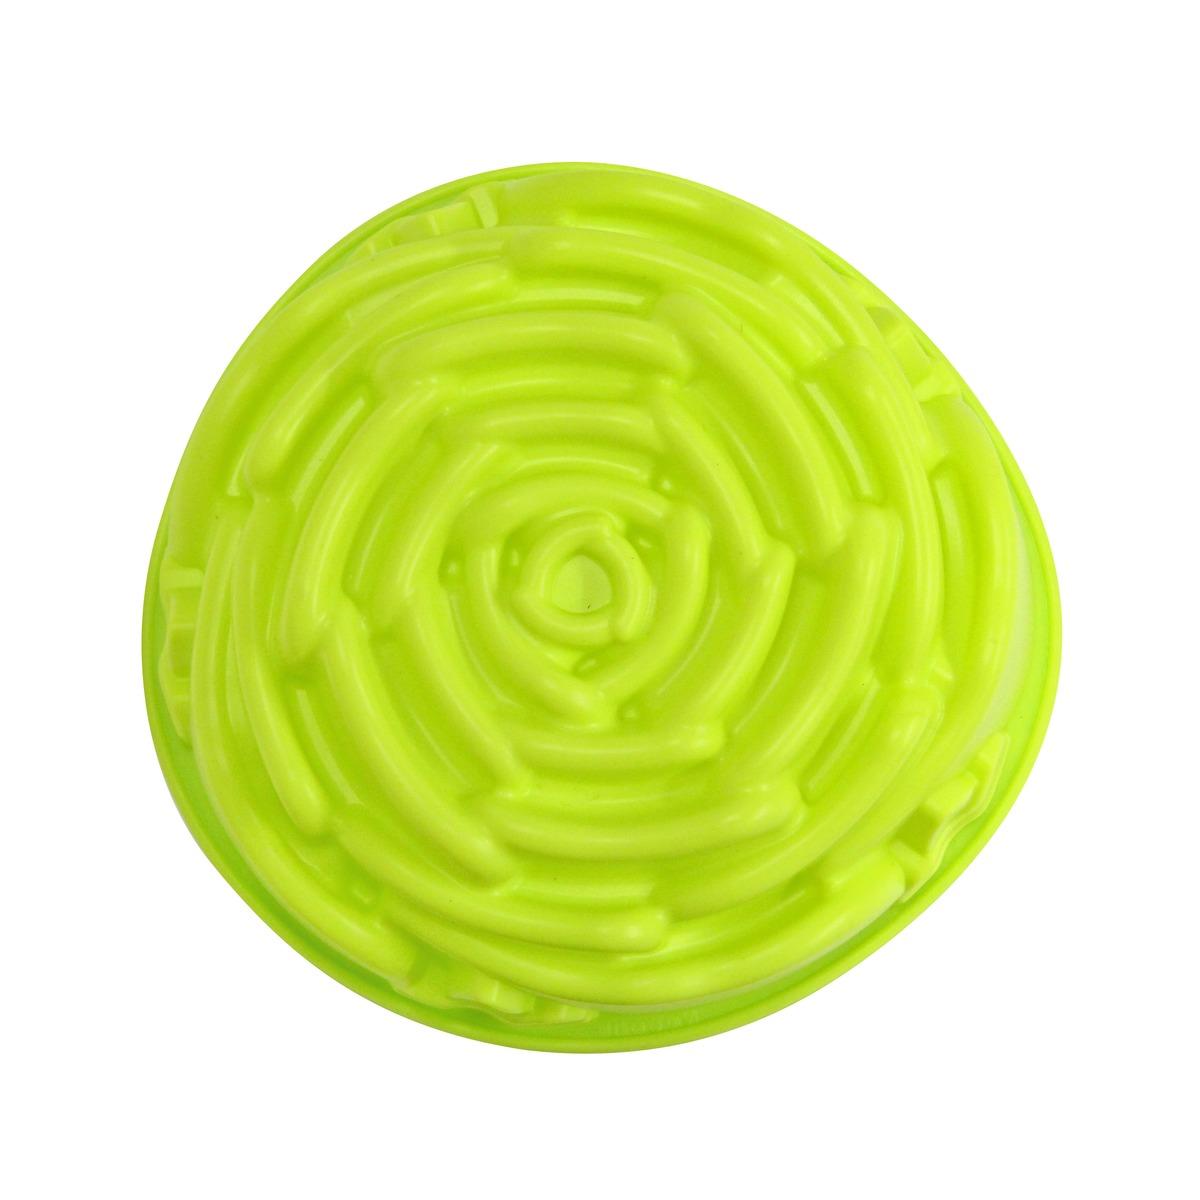 Moule à gâteau en forme de fleur - Antiadhésif - 22 cm - Vert